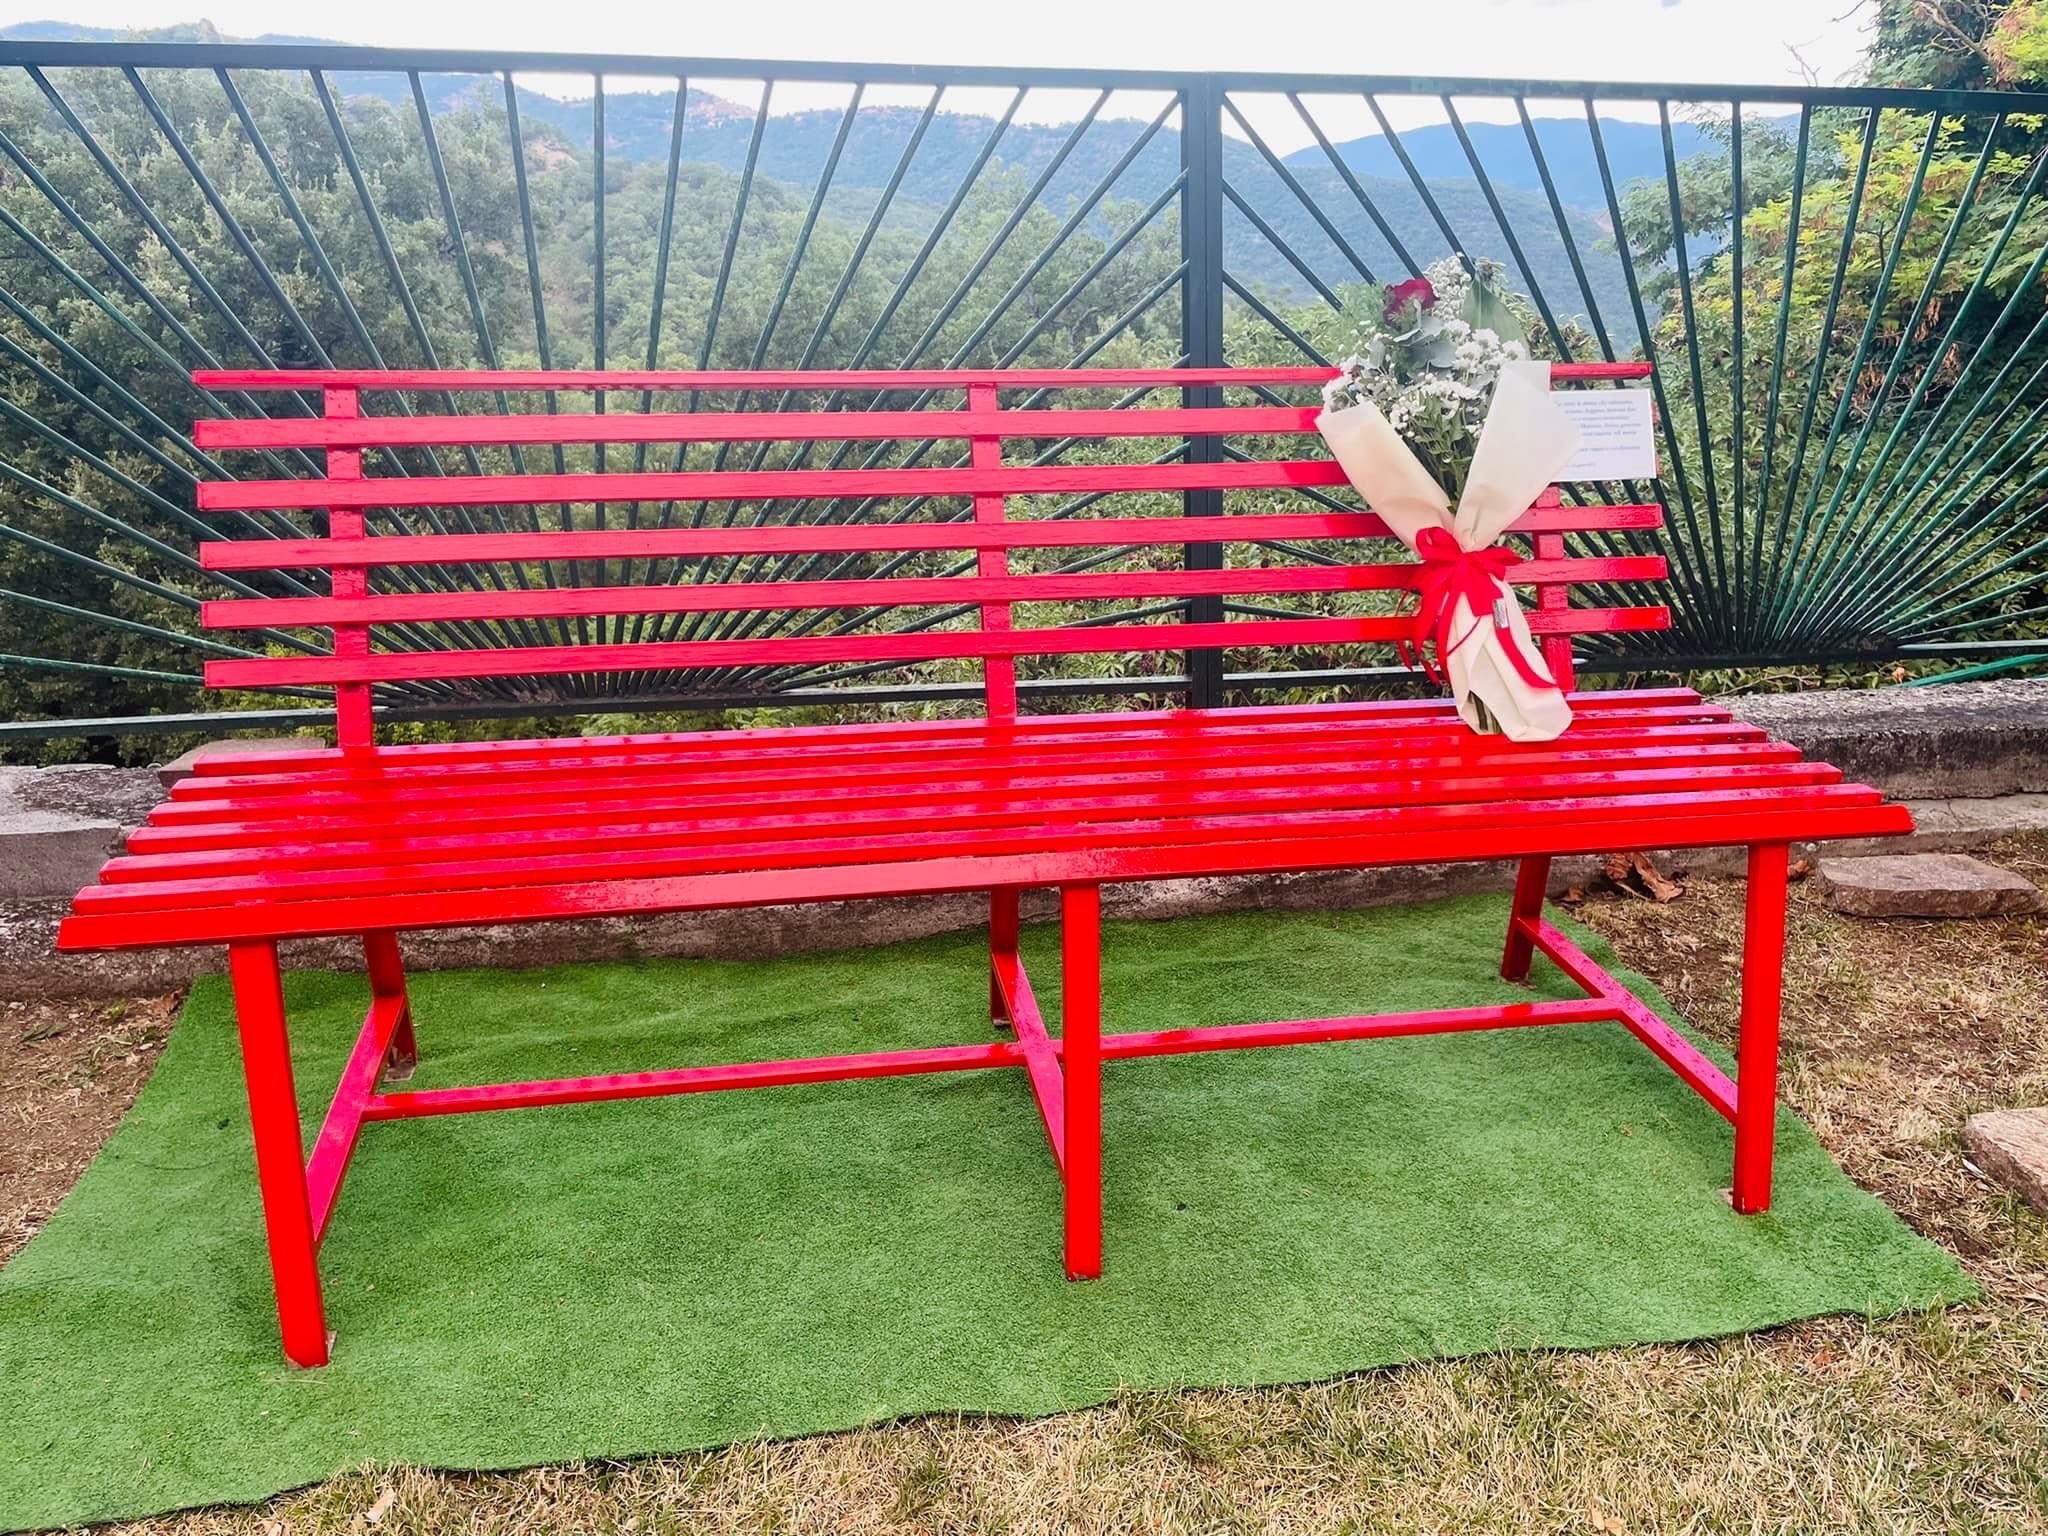 Una panchina rossa per Gioia, scomparsa nel 2017